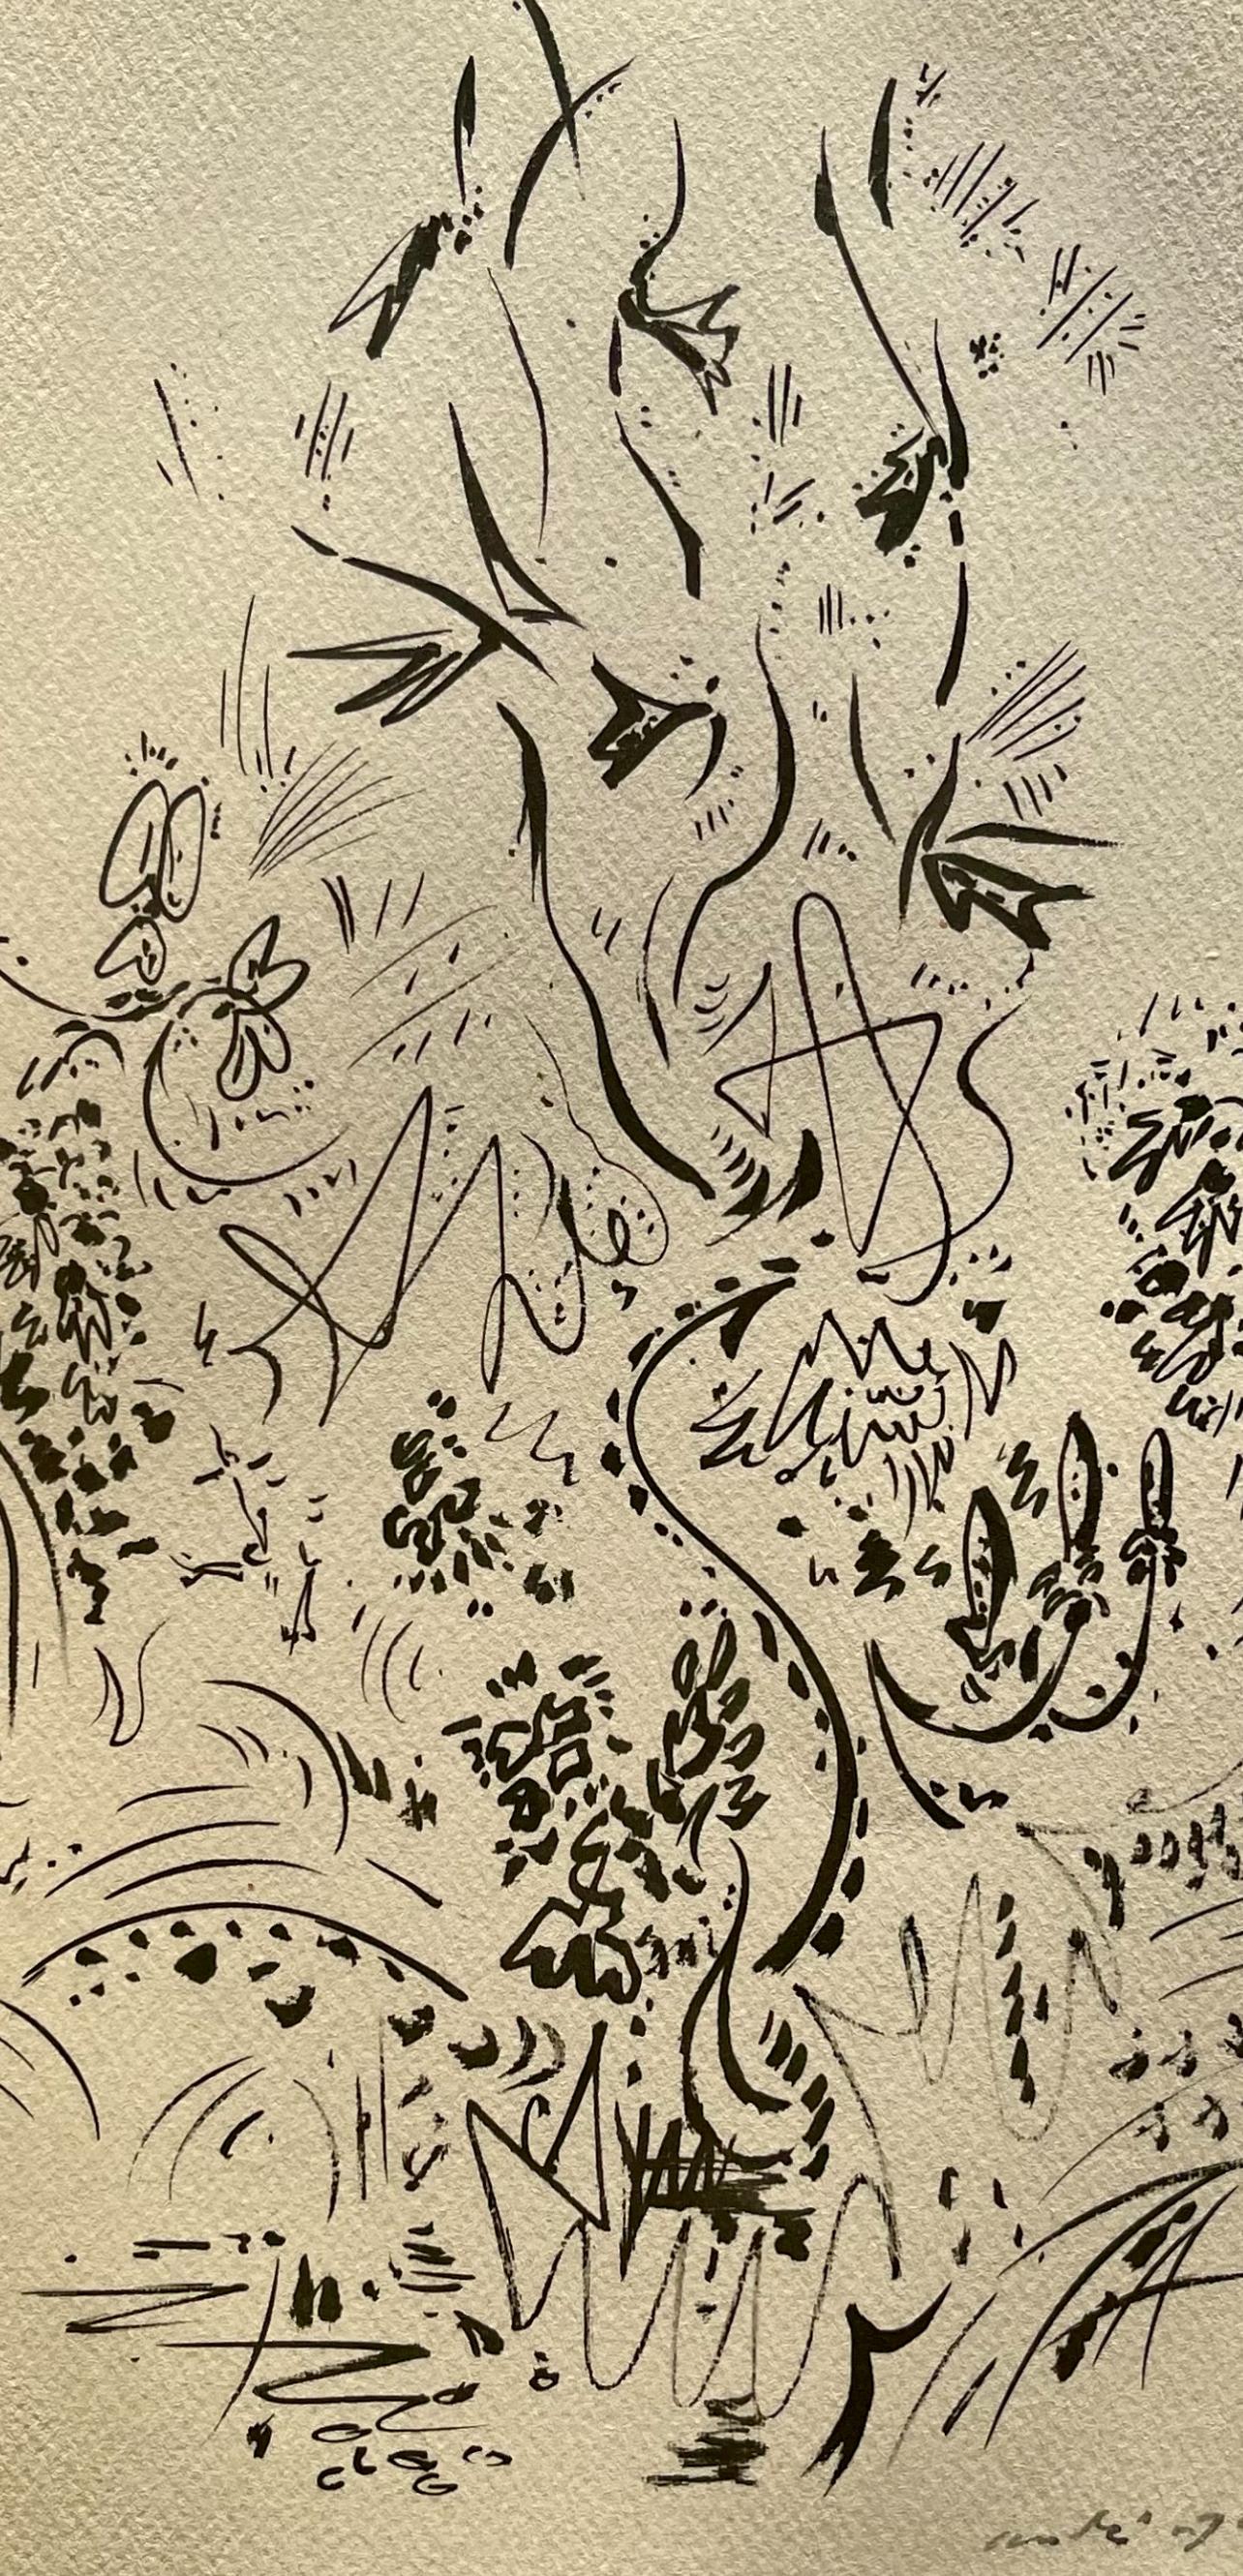 Masson, Herbes et fleurs, Masson Dessins (nach) – Print von André Masson